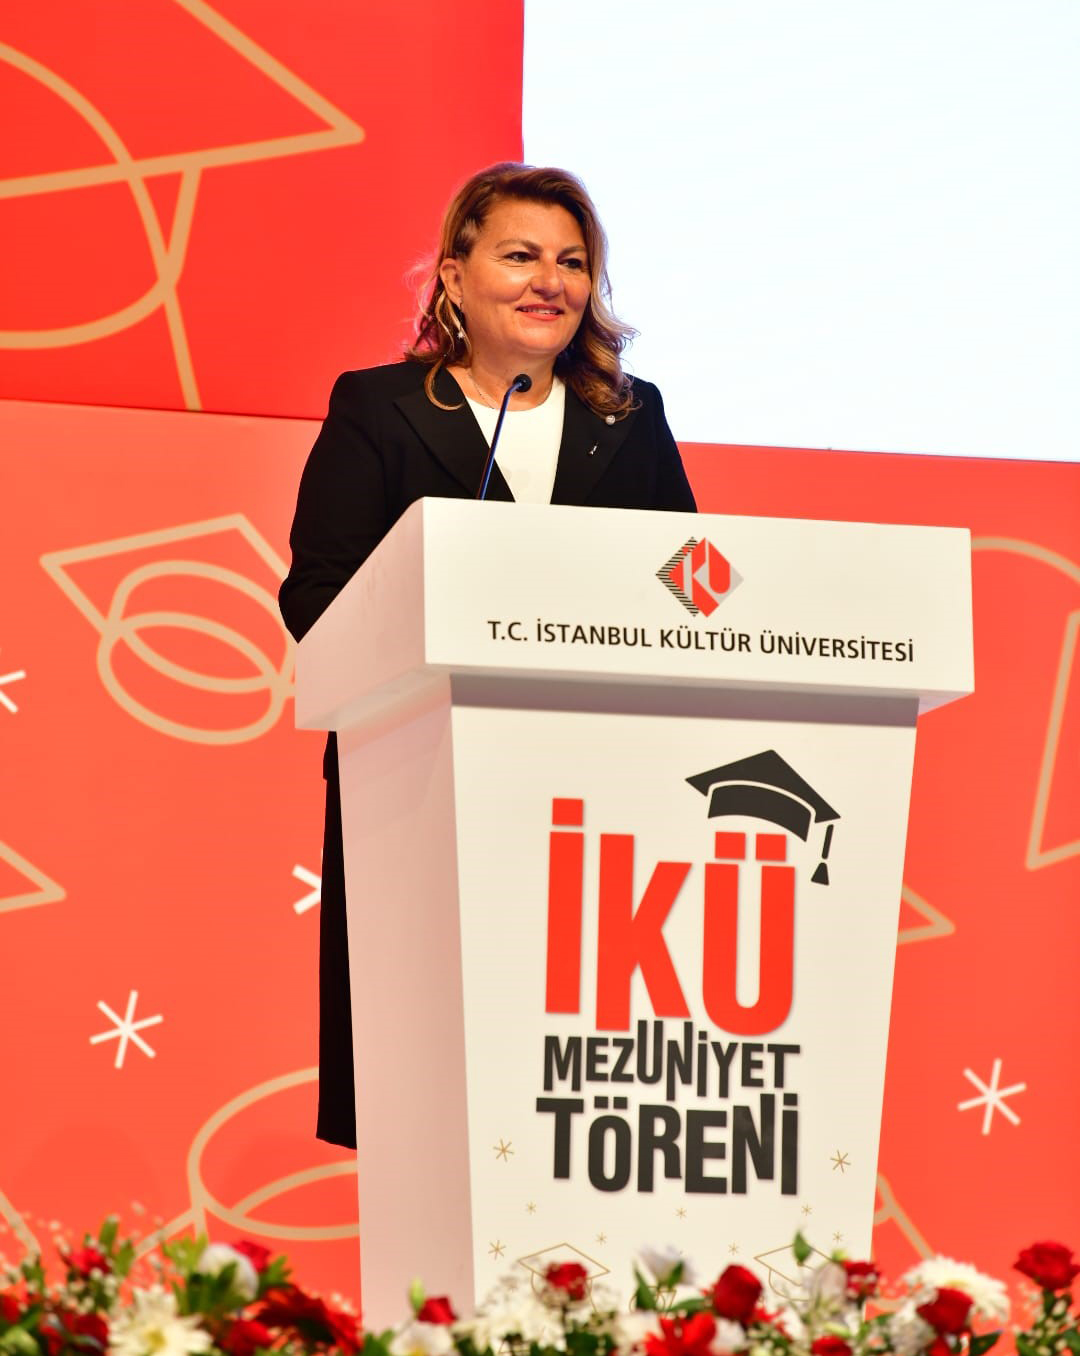 İstanbul Kültür Üniversitesi (İKÜ) 2019-2020 ve 2020-2021 Mezuniyet Töreni